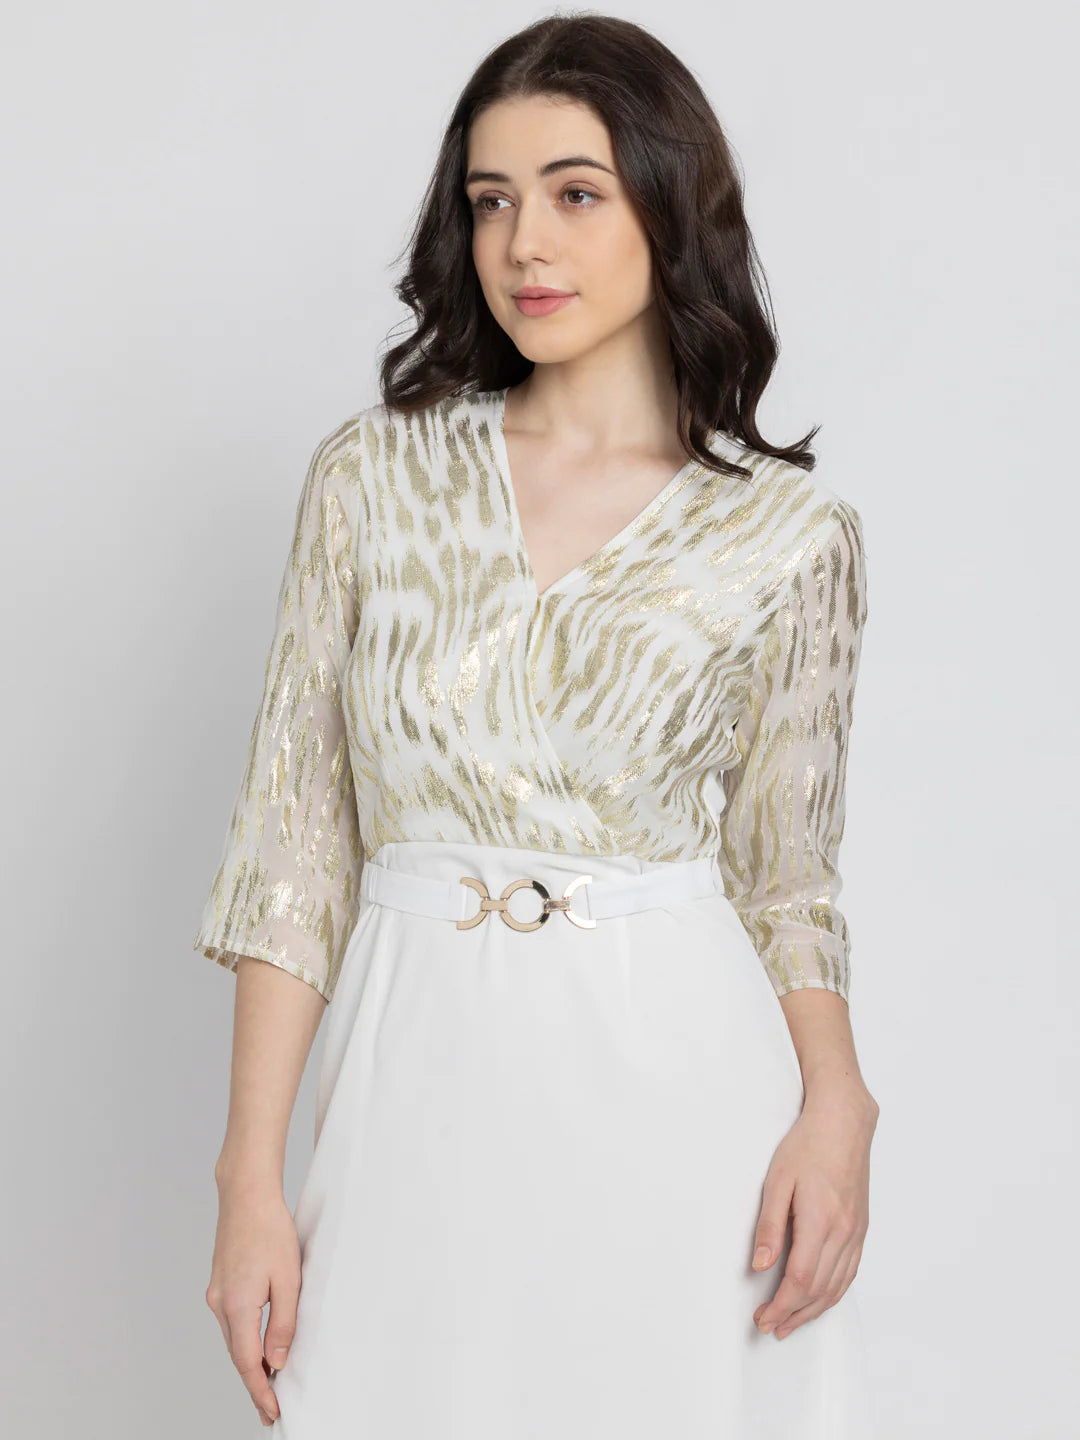 White Overlap Party Dress for Women | Elegant White Overlap Party Dress